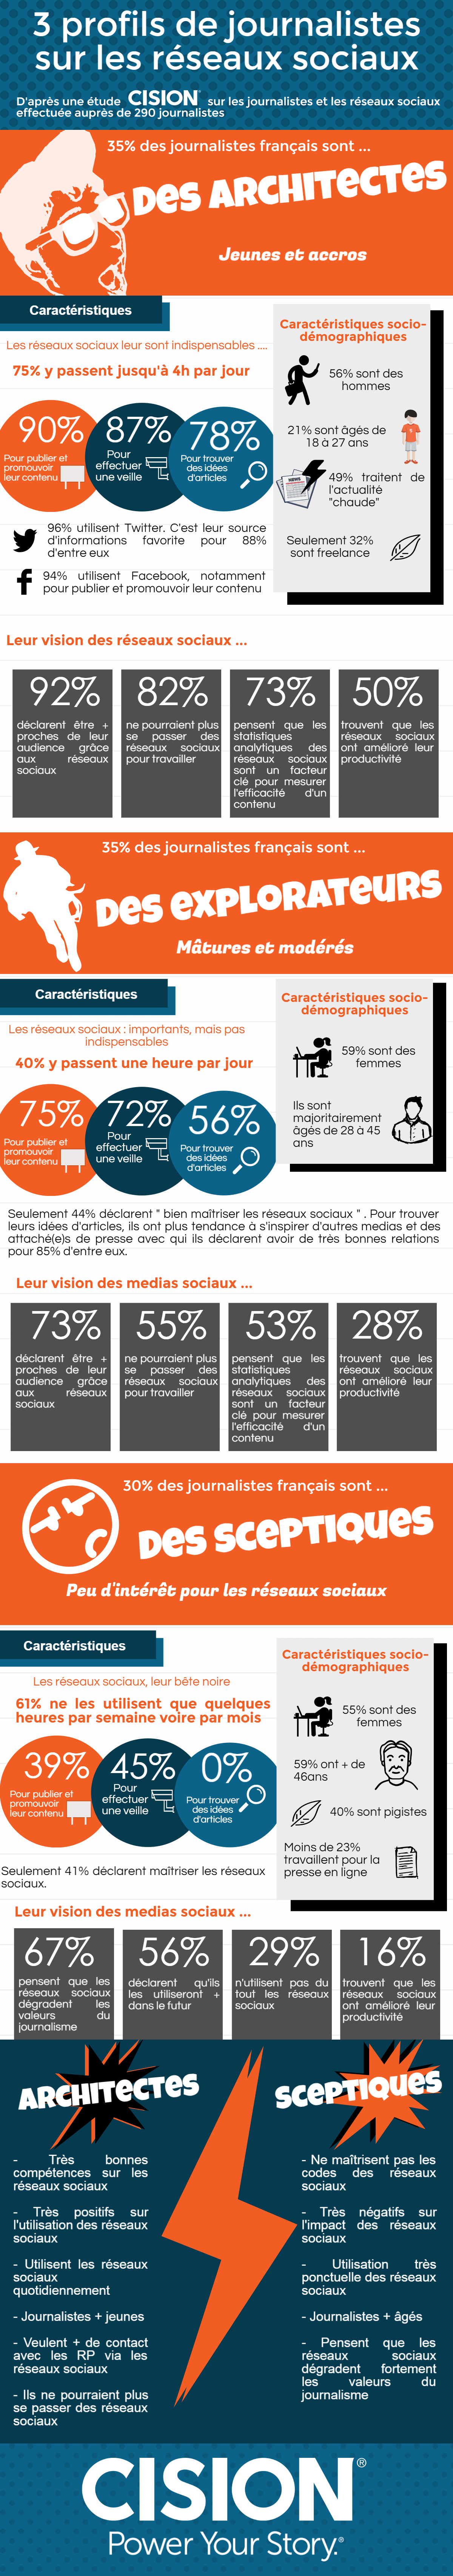 Infographie CISION - journalistes et réseaux sociaux